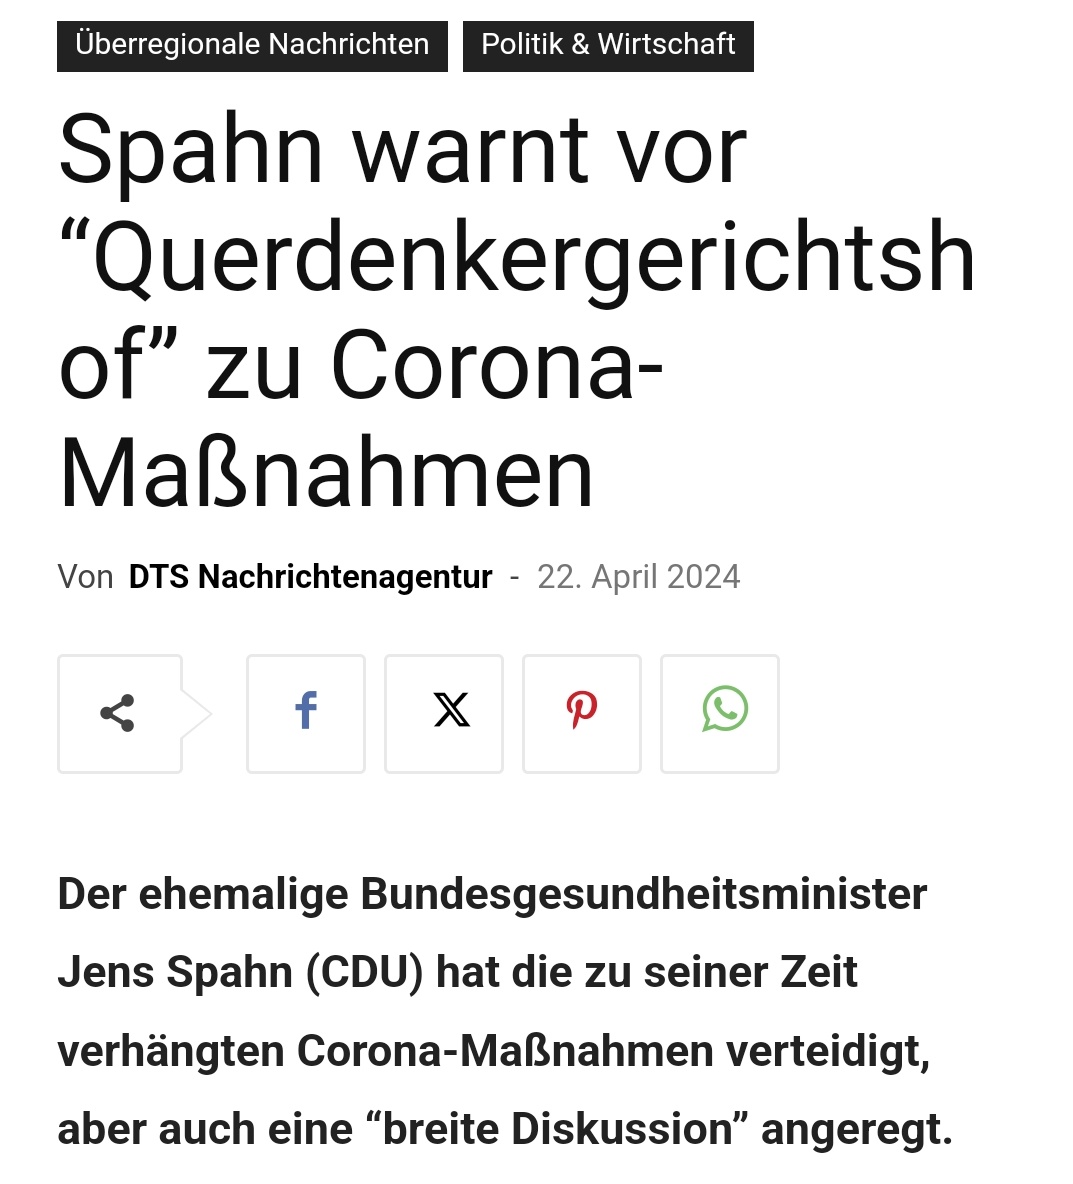 Es muss außer Frage stehen, dass die seinerzeitigen #Corona-Maßnahmen unabhängig aufgearbeitet werden. Wer diese Aufarbeitung fürchtet, hat etwas zu verbergen. #Spahn #Querdenkergerichtshof 👇

presse-augsburg.de/spahn-warnt-vo…